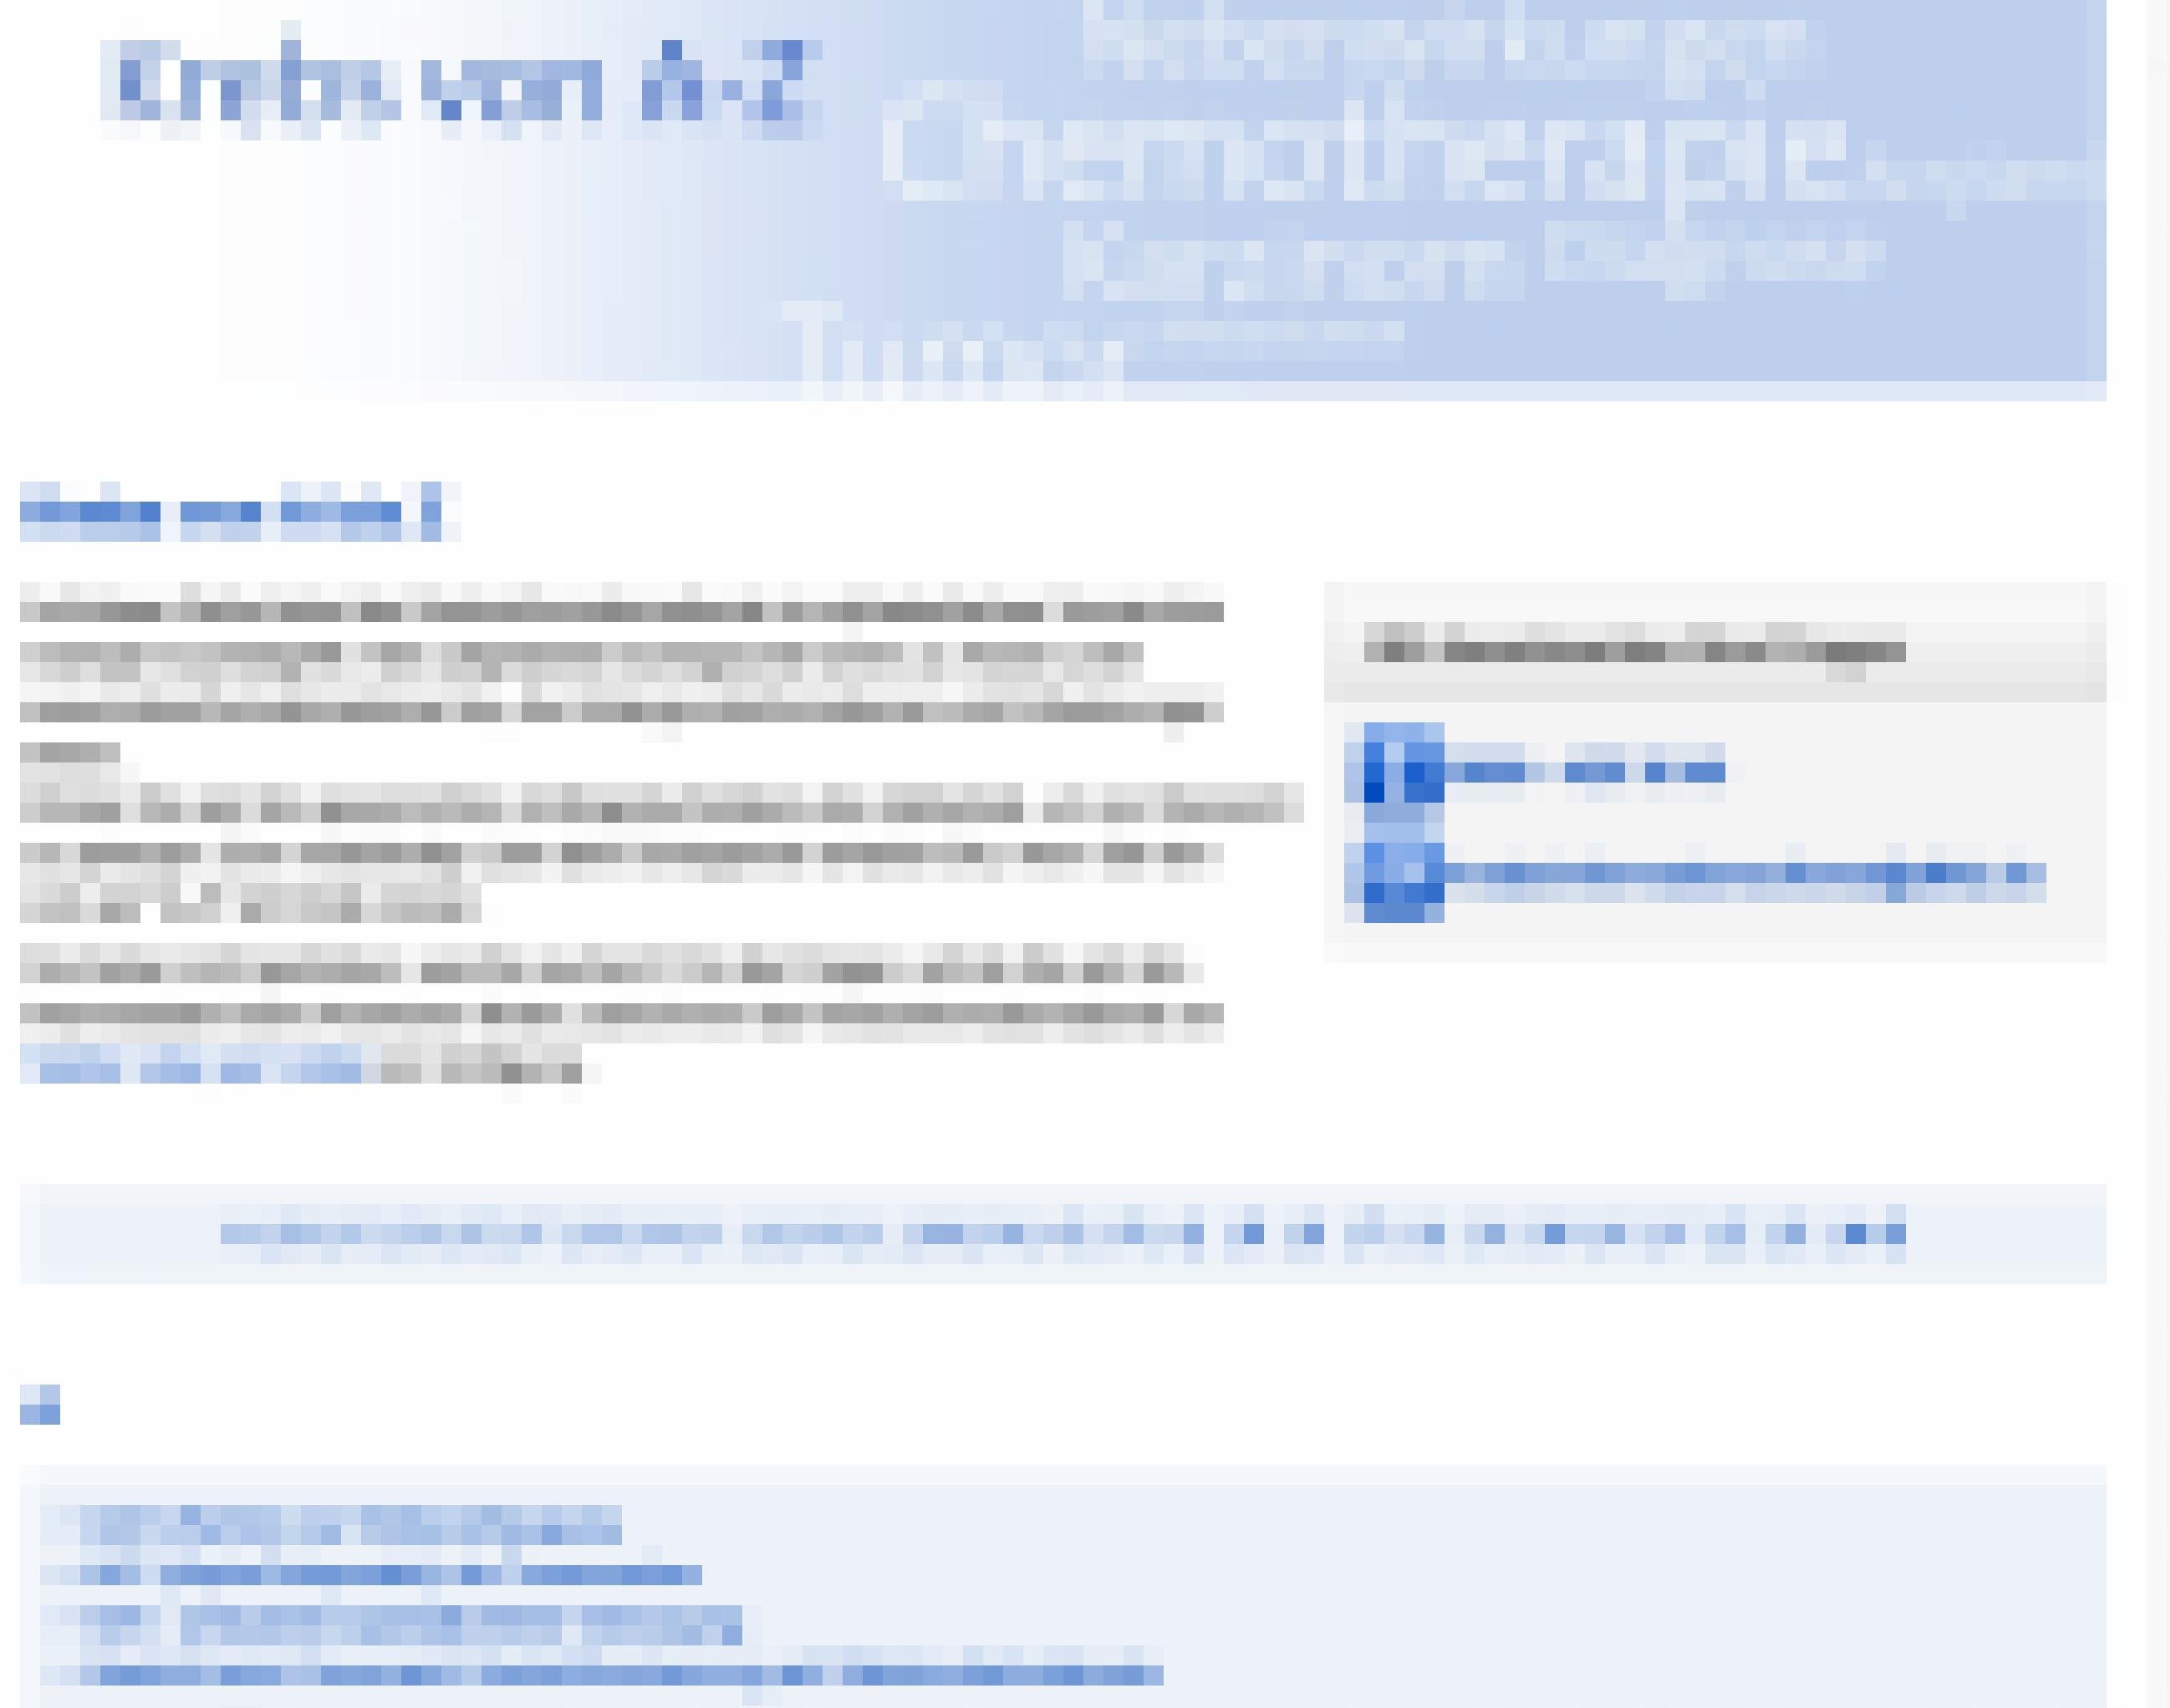 Screenshot des Glossars von ww.krebsinformationsdienst.de. Zu sehen ist die Startseite mit Erklärungen und A-Z-Navigation